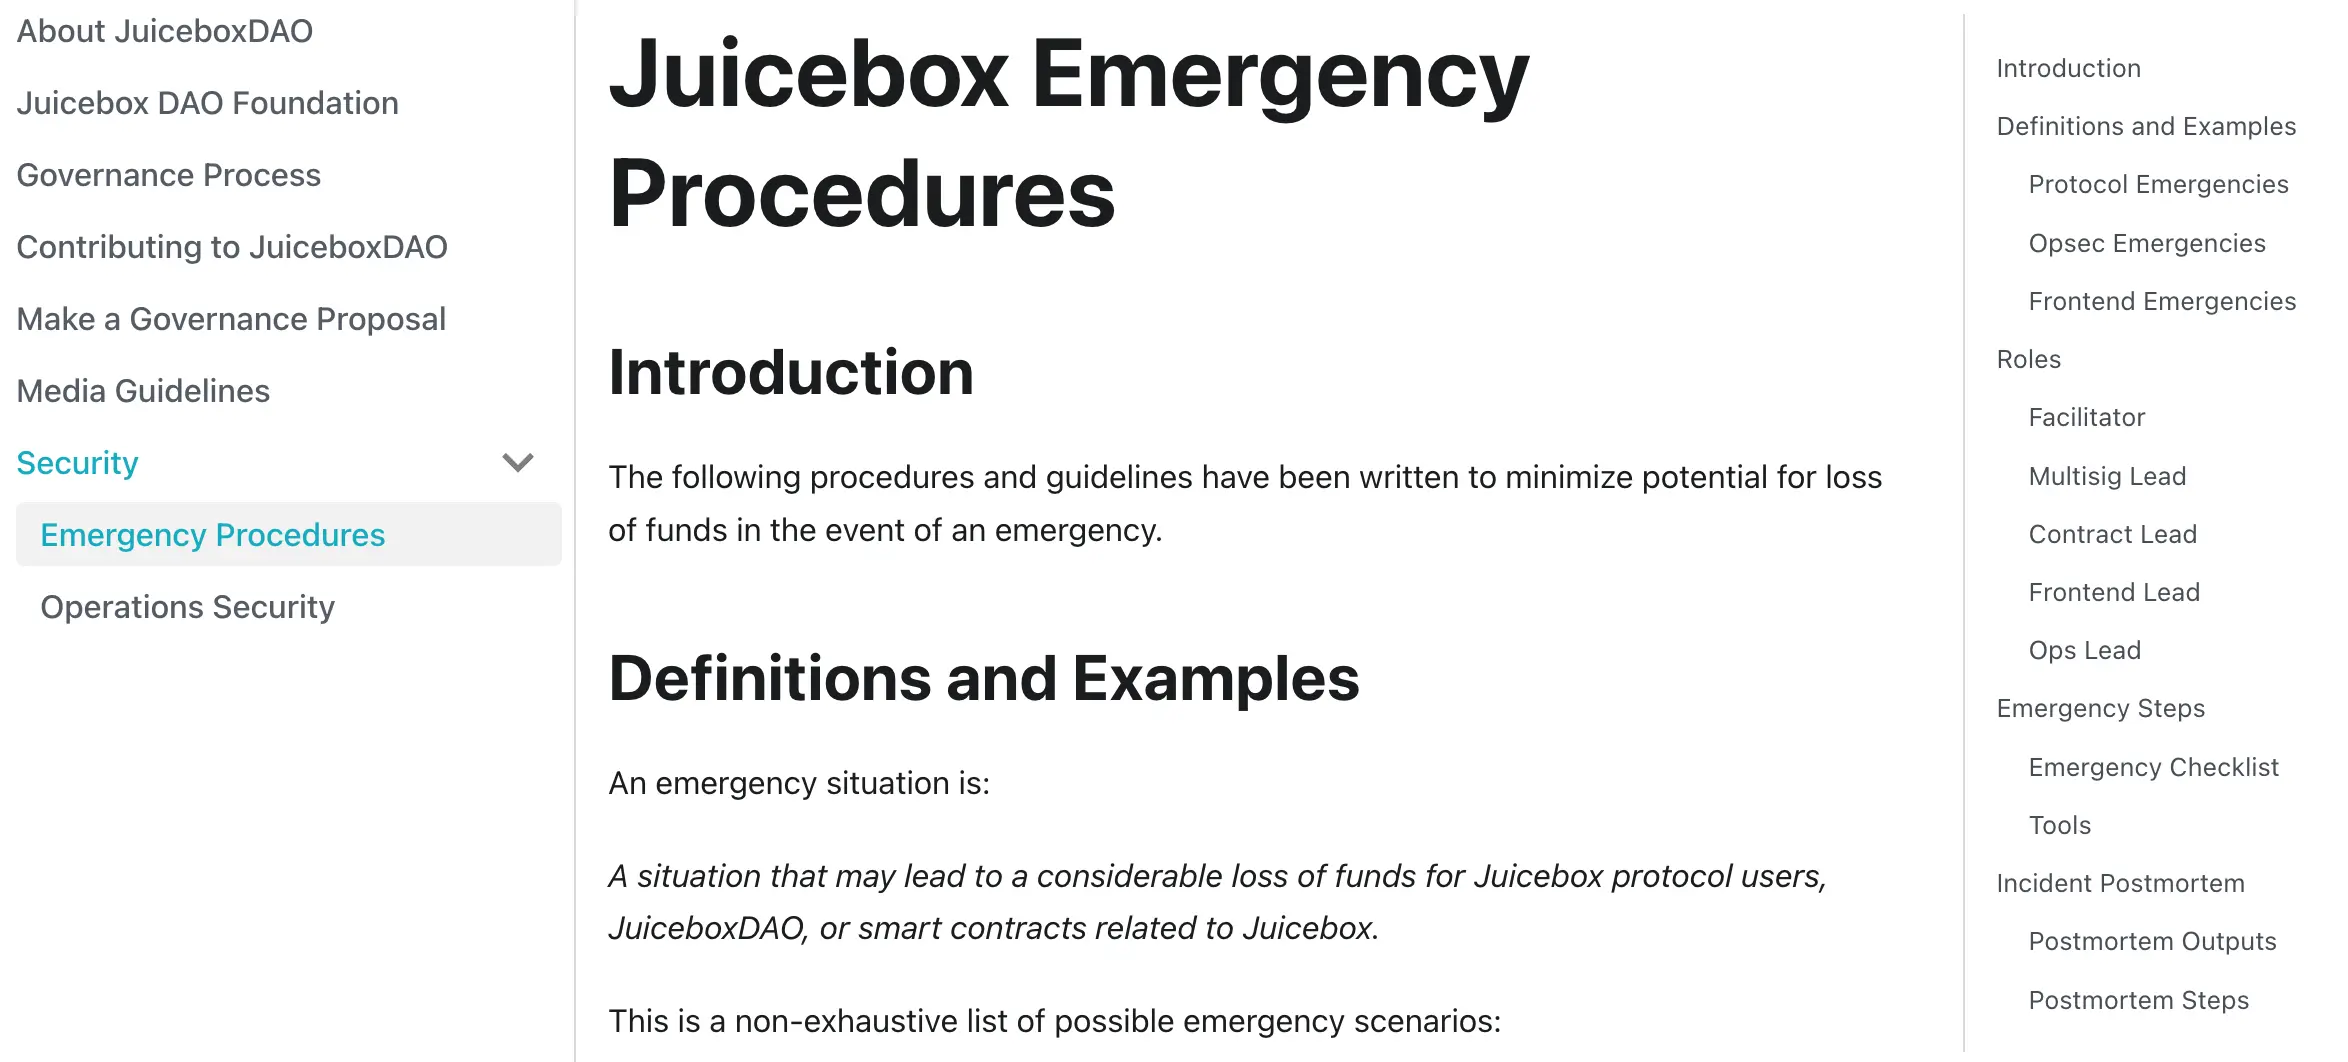 Juicebox Emergency Procedures